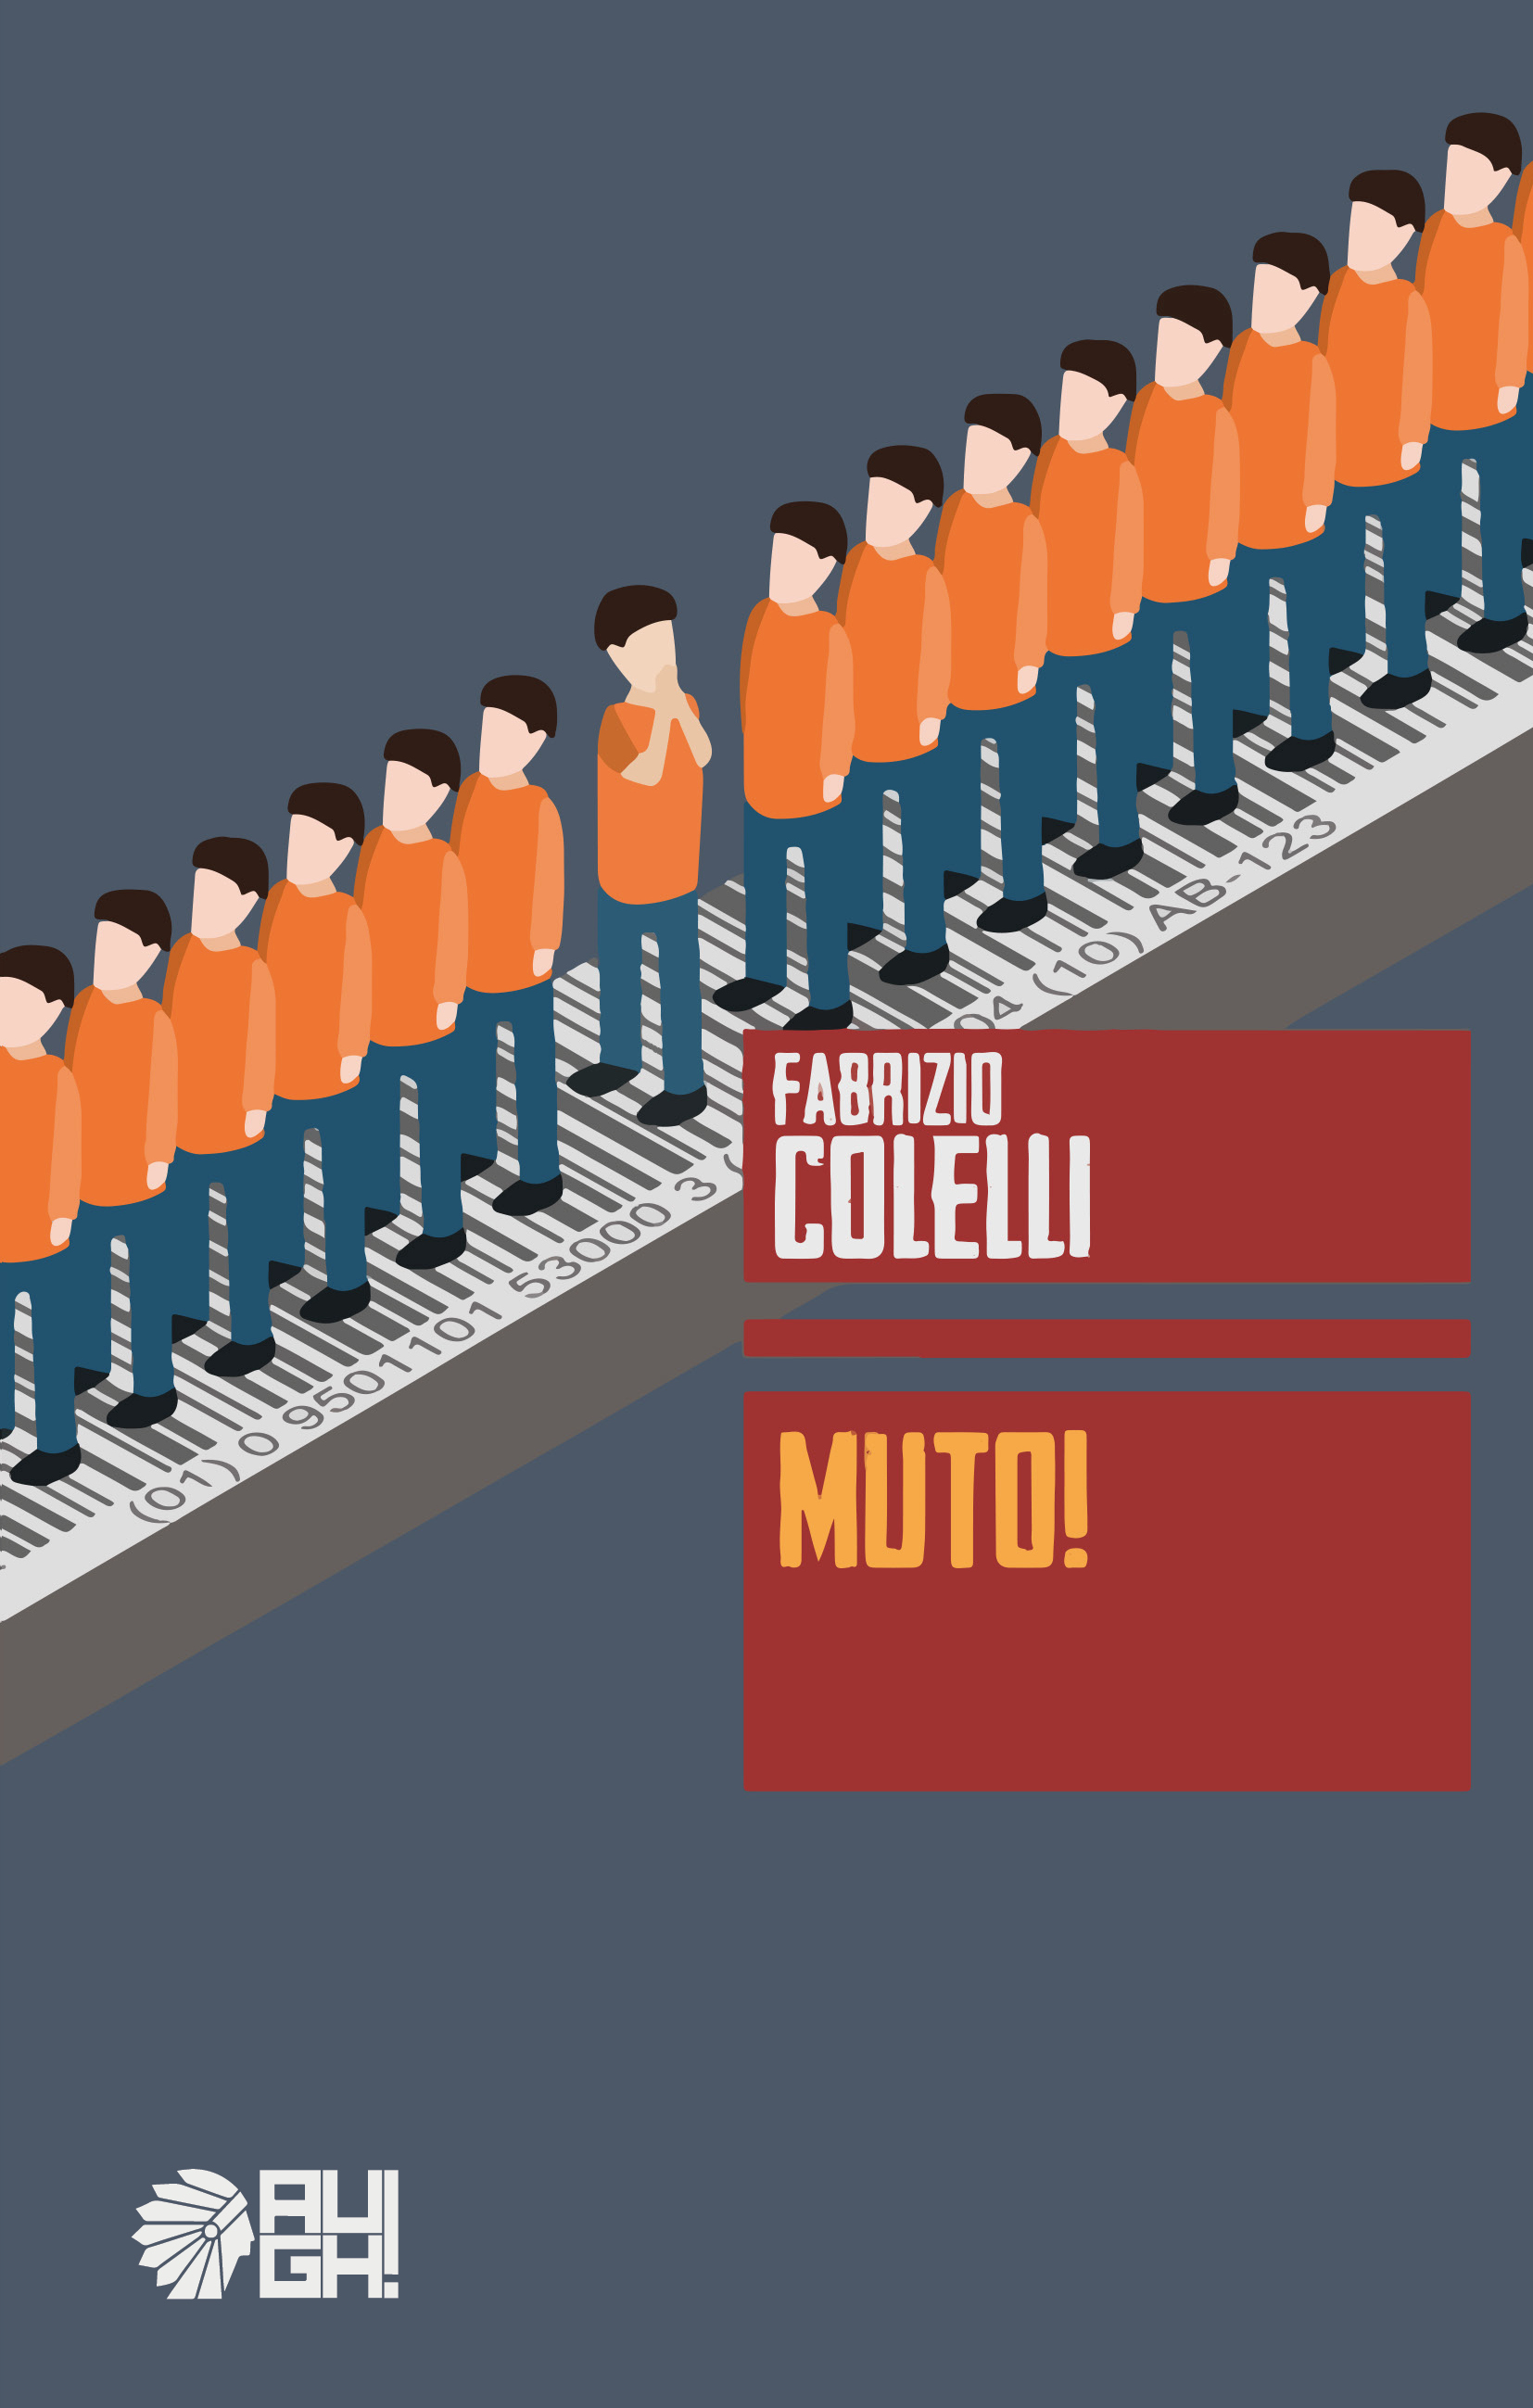 La Fenice presenta Muto! di Fabrizio Colelli